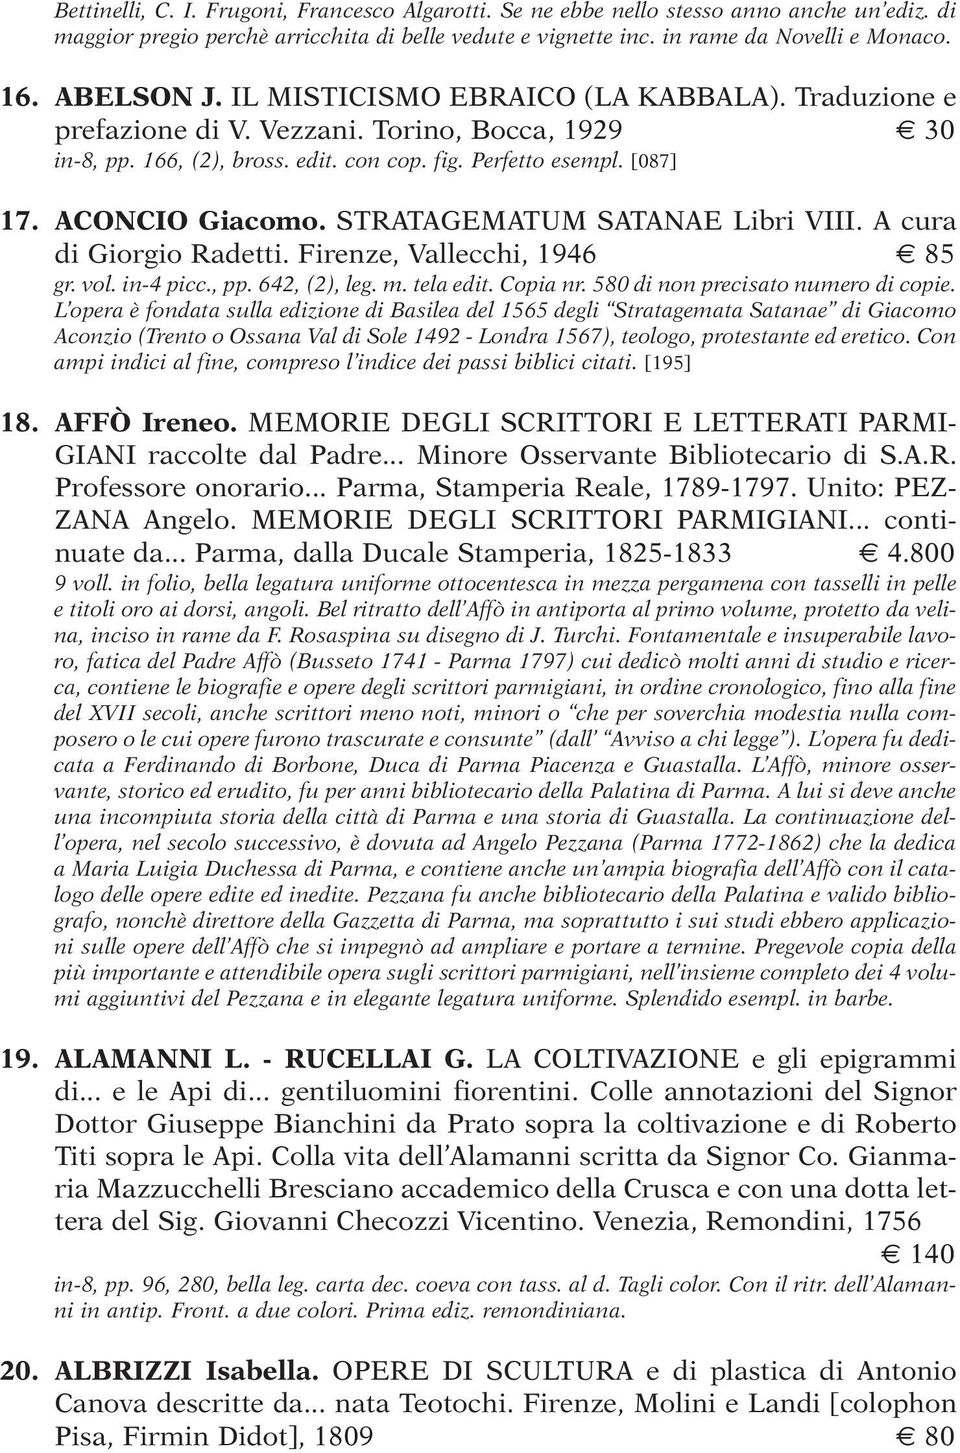 STRATAGEMATUM SATANAE Libri VIII. A cura di Giorgio Radetti. Firenze, Vallecchi, 1946 85 gr. vol. in-4 picc., pp. 642, (2), leg. m. tela edit. Copia nr. 580 di non precisato numero di copie.